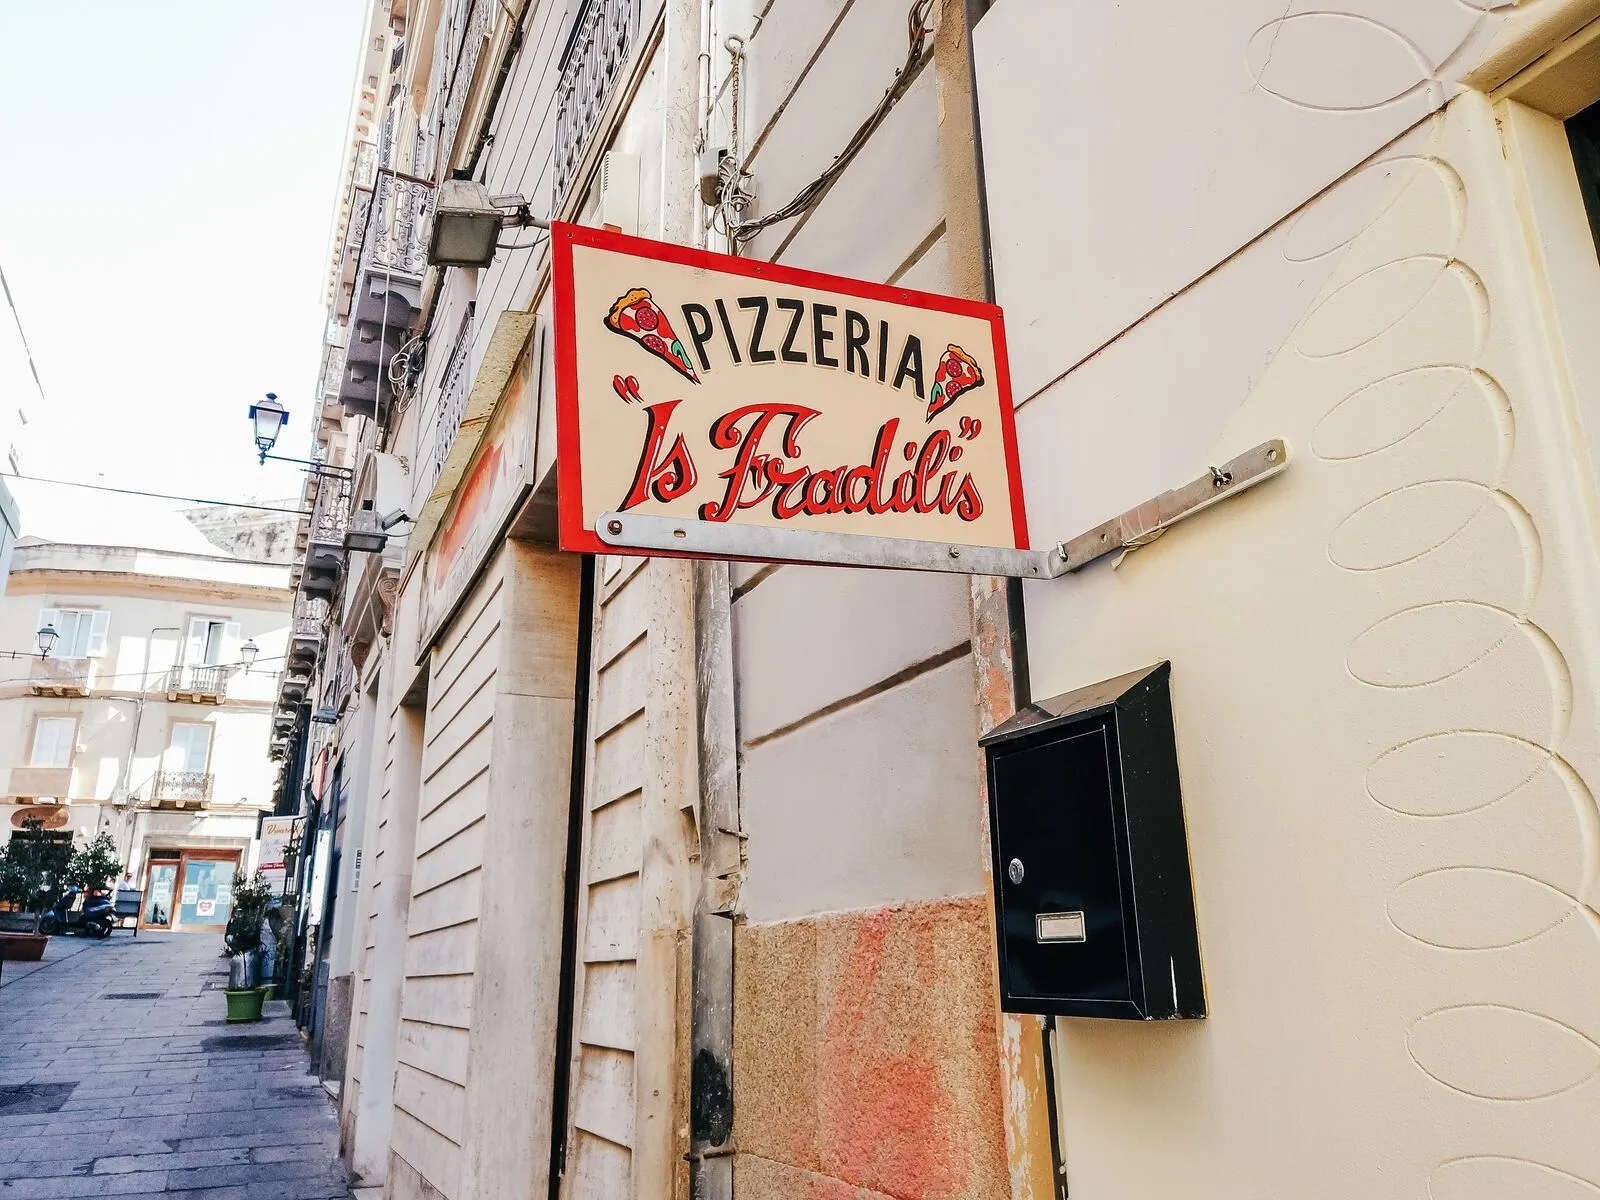 A pizzeria sign we found in Cagliari